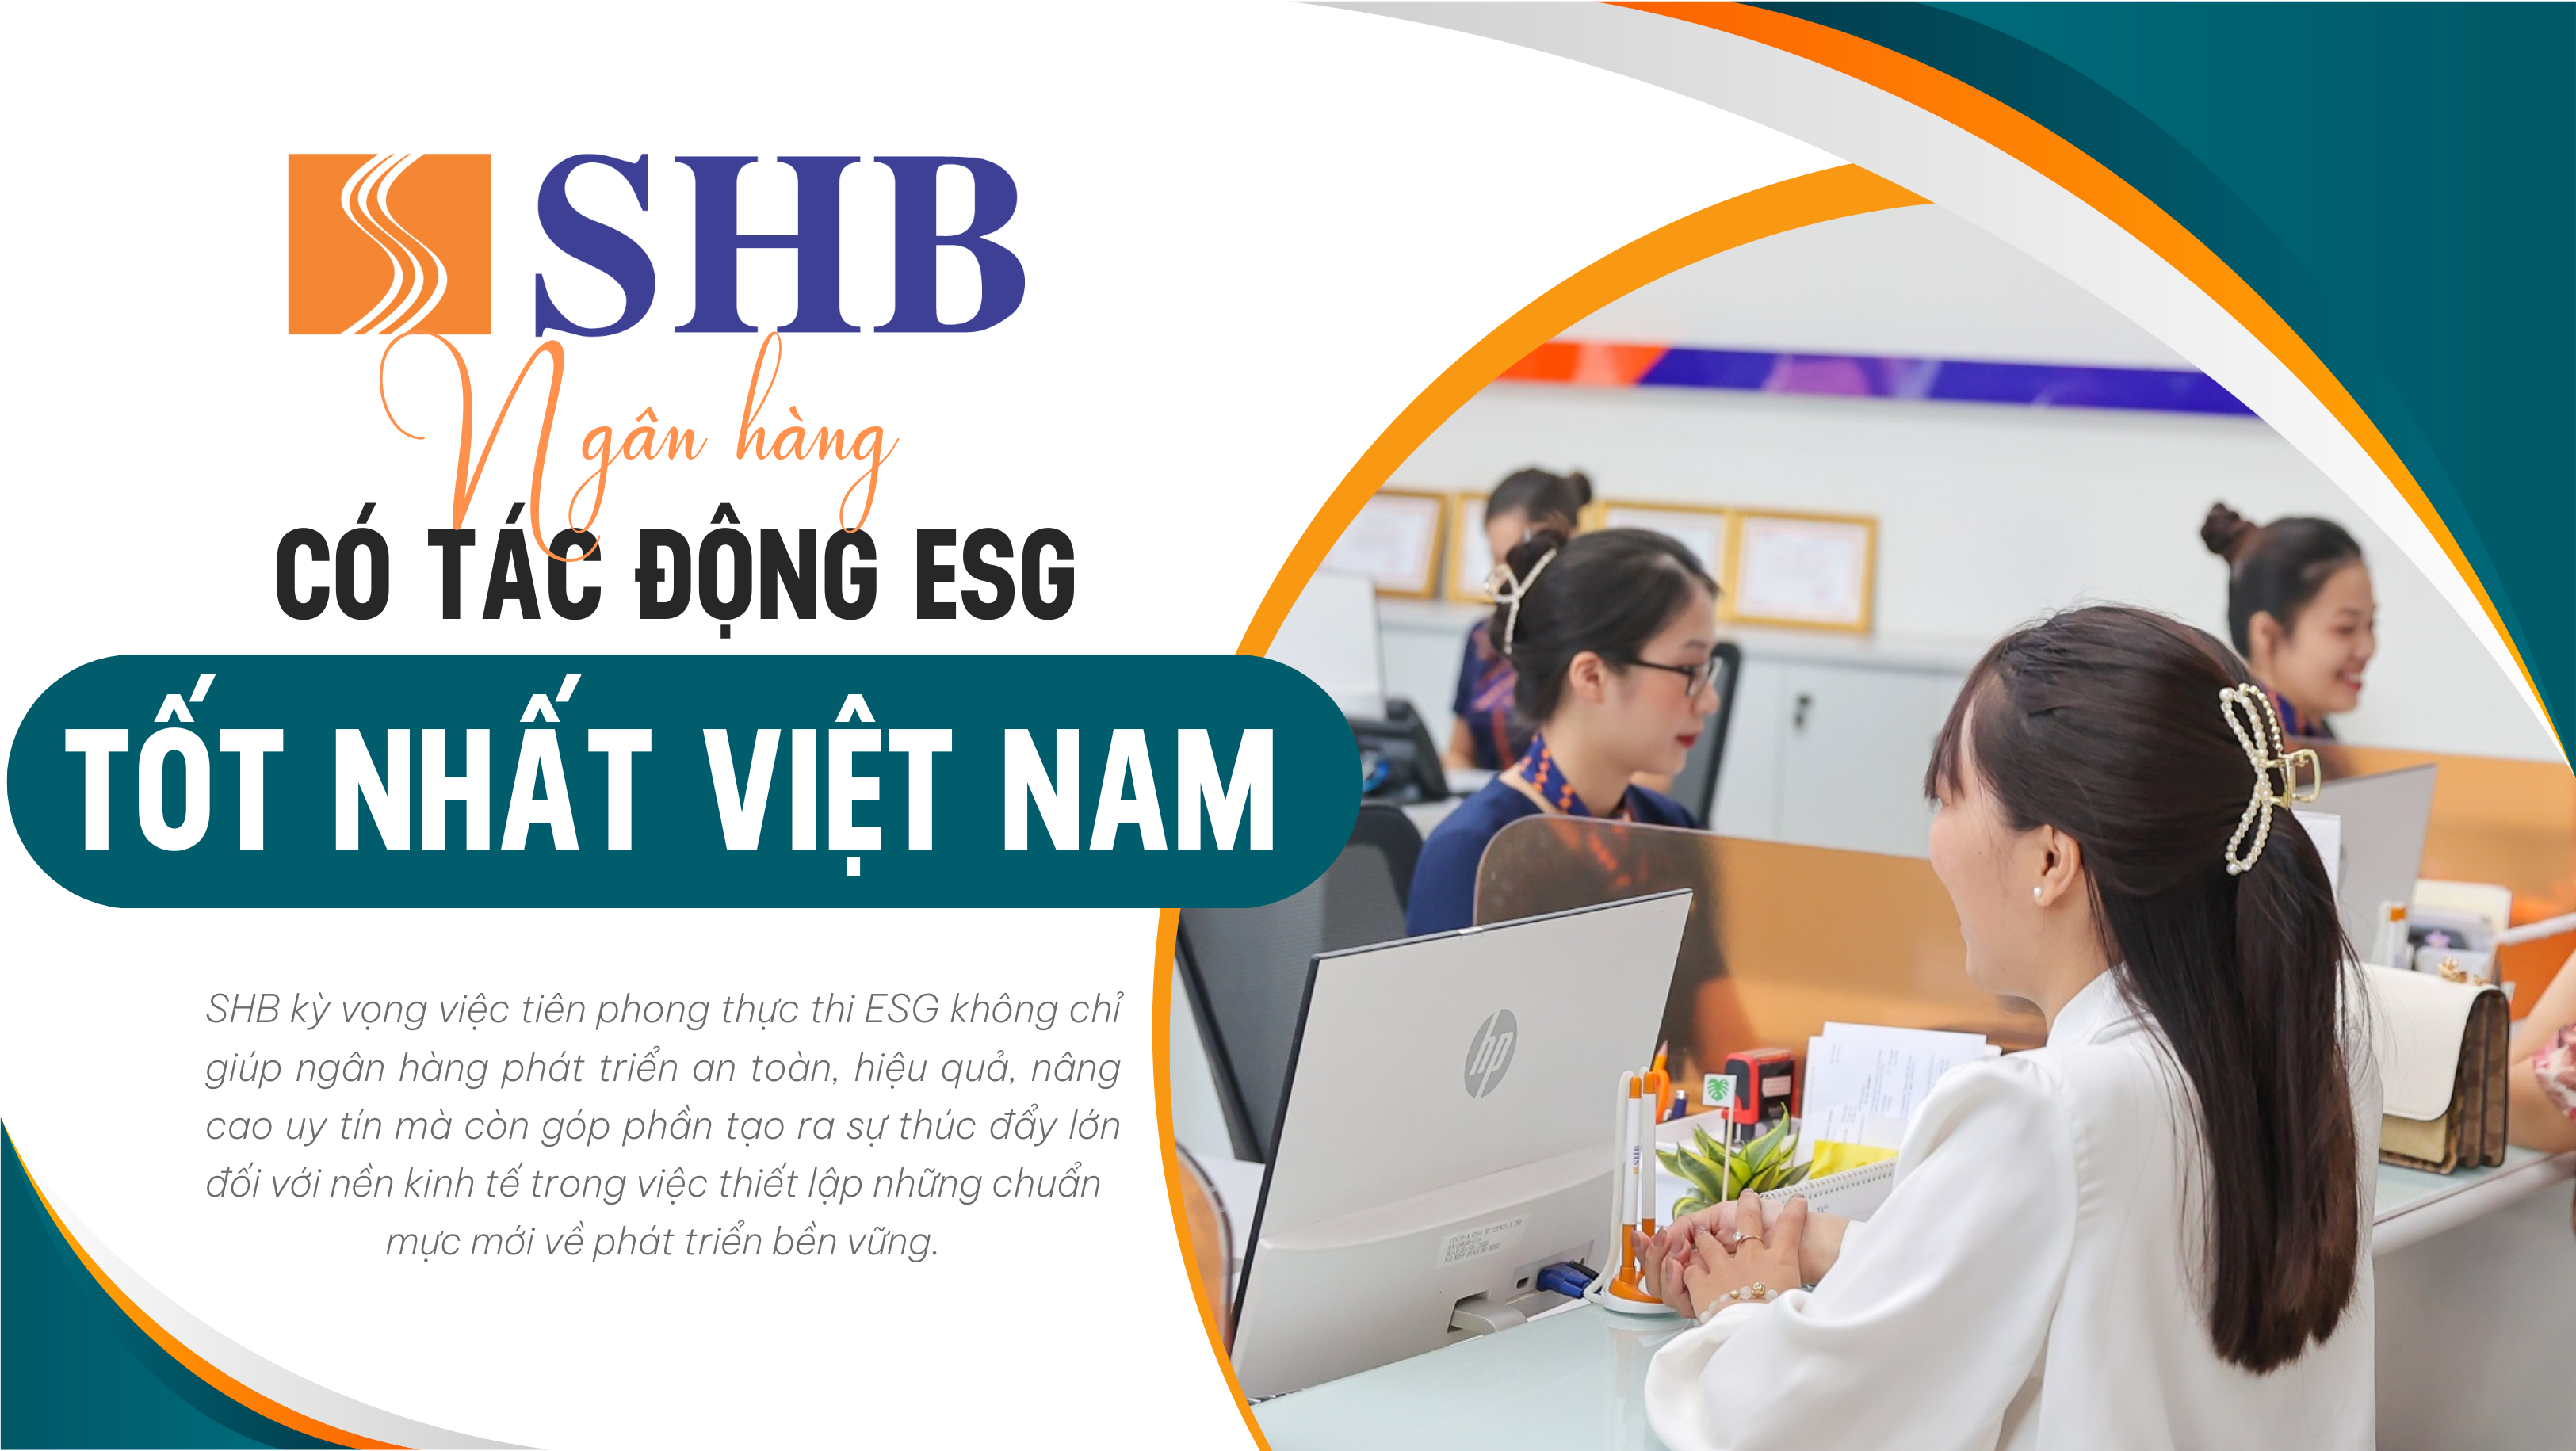 SHB được vinh danh “Ngân hàng có tác động ESG tốt nhất Việt Nam”